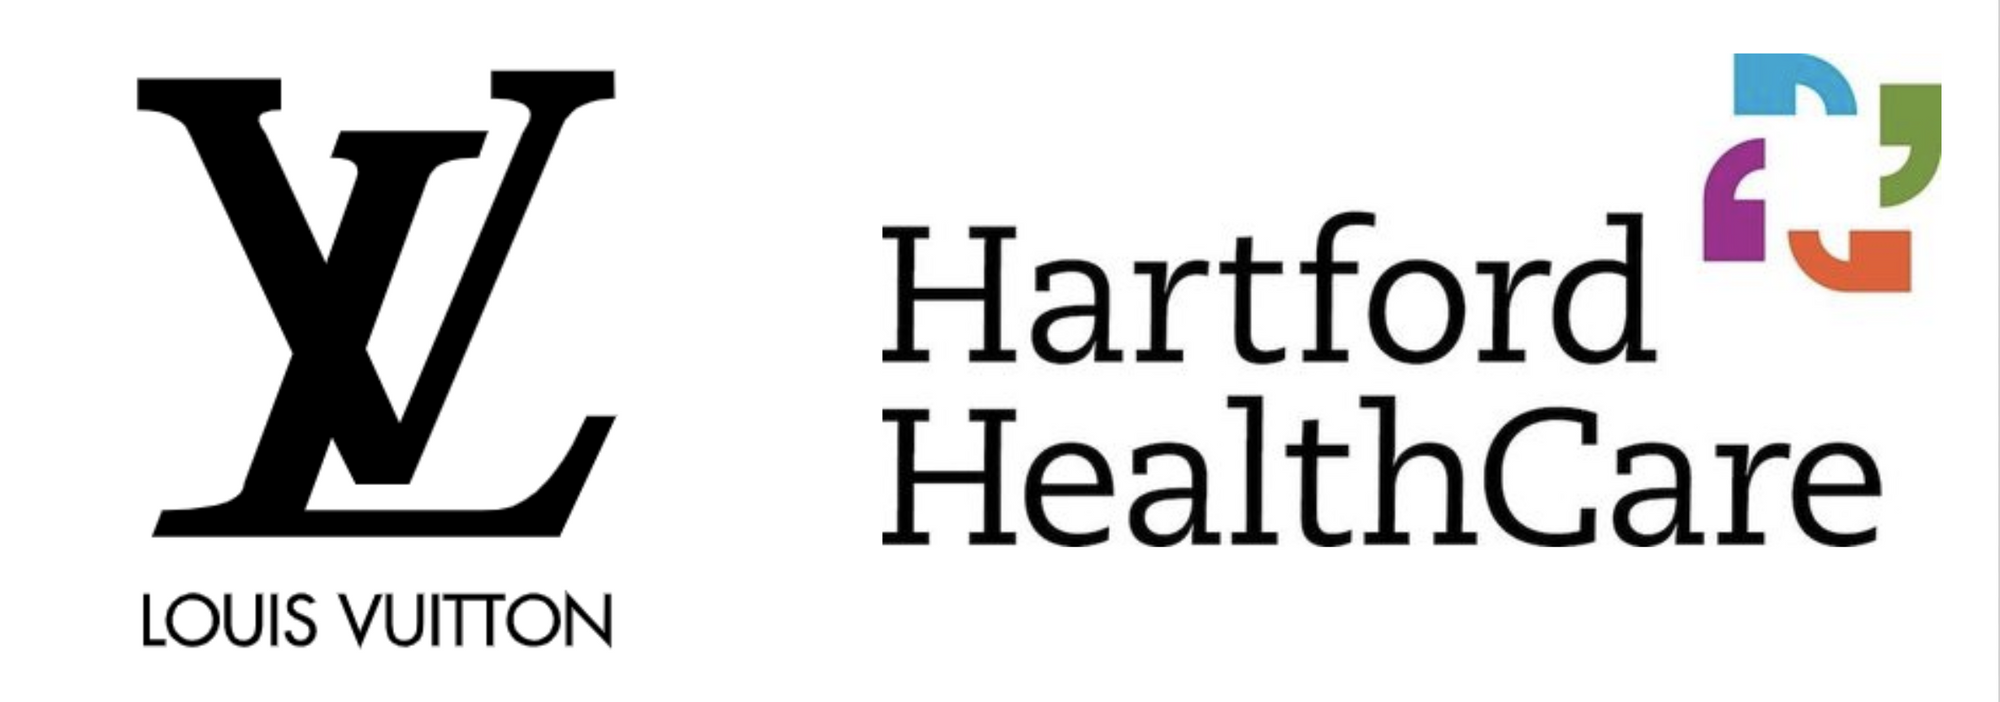 Louis Vuitton and Hartford HealthCare logos